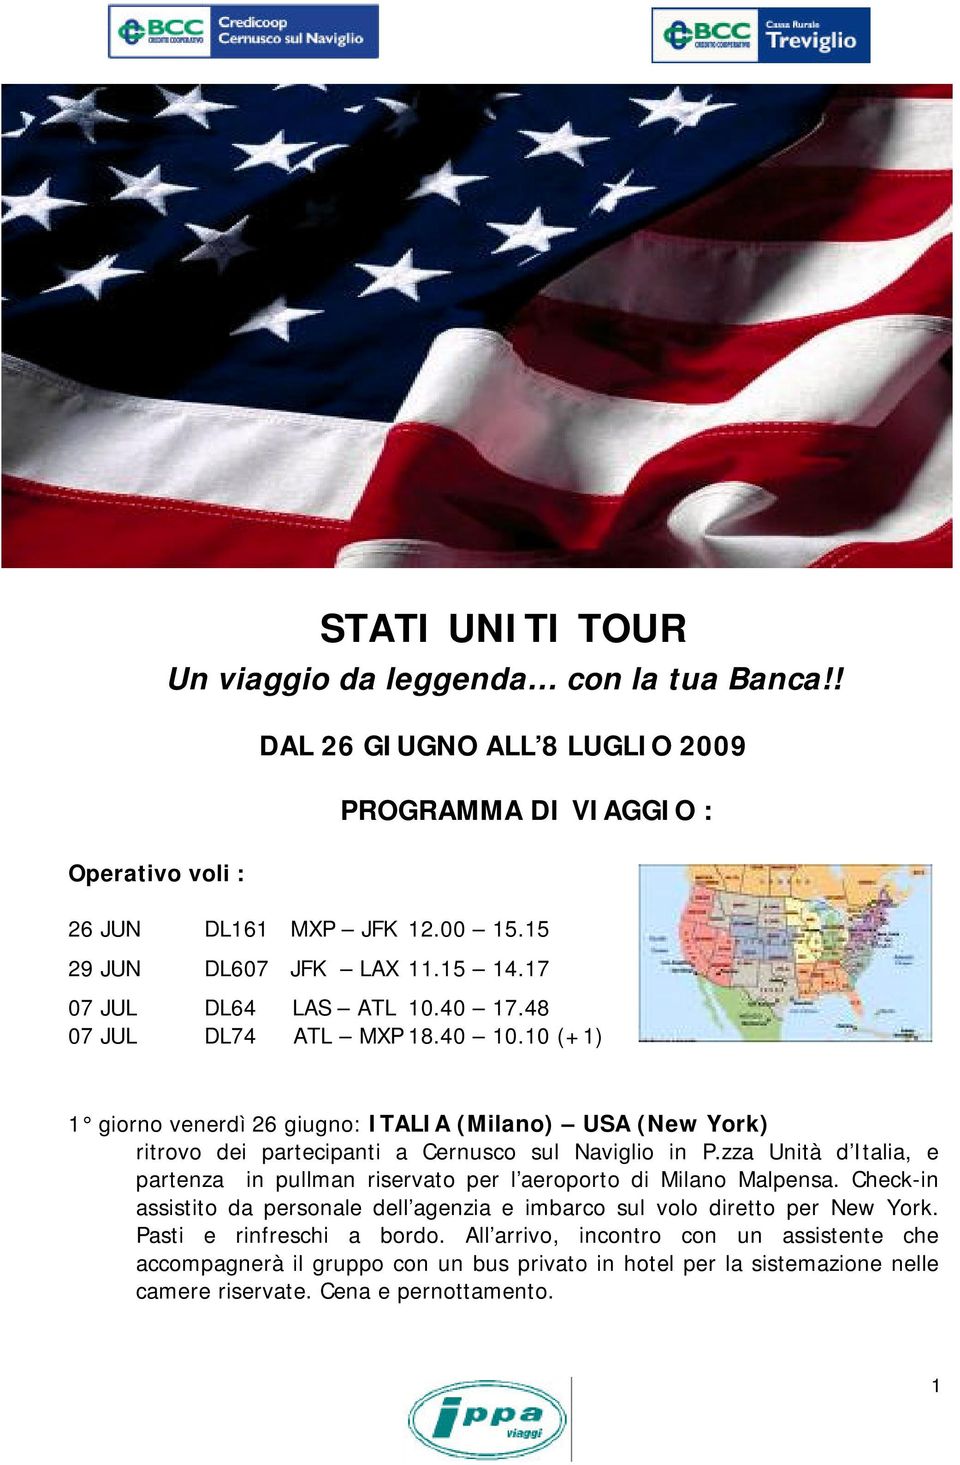 10 (+1) 1 giorno venerdì 26 giugno: ITALIA (Milano) USA (New York) ritrovo dei partecipanti a Cernusco sul Naviglio in P.